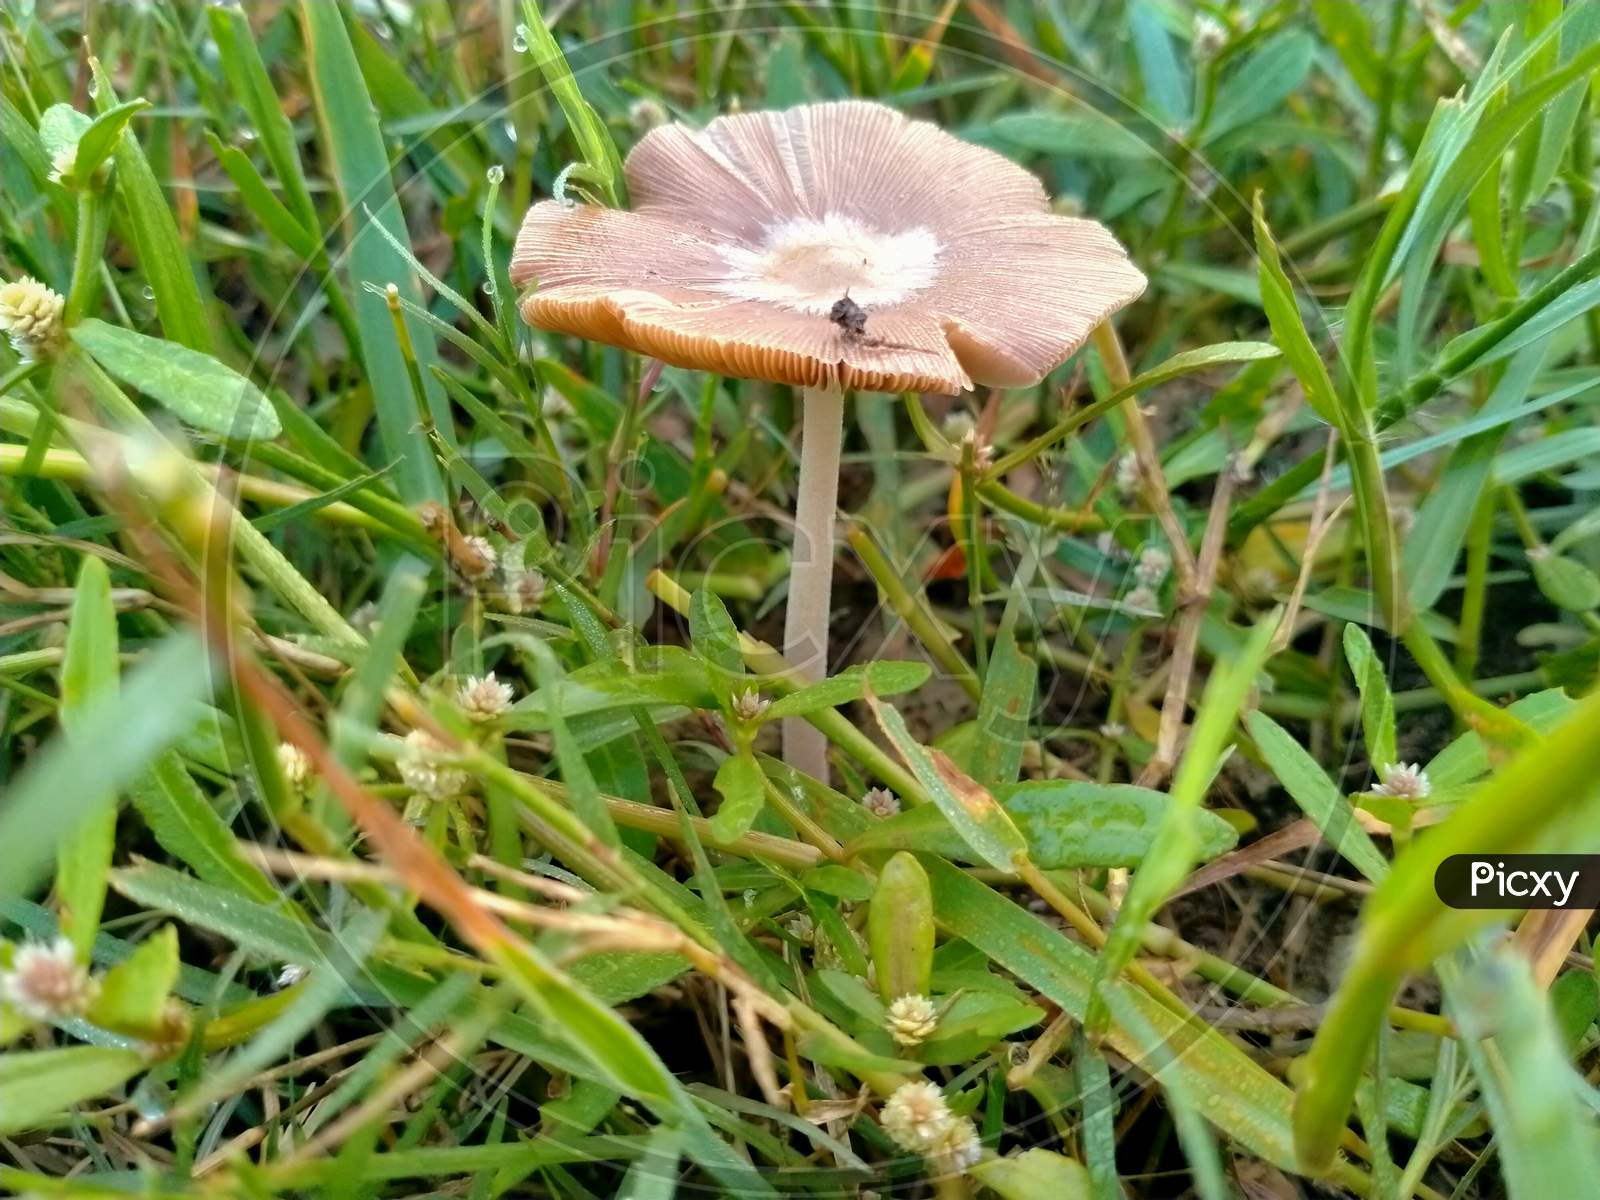 A club fungi